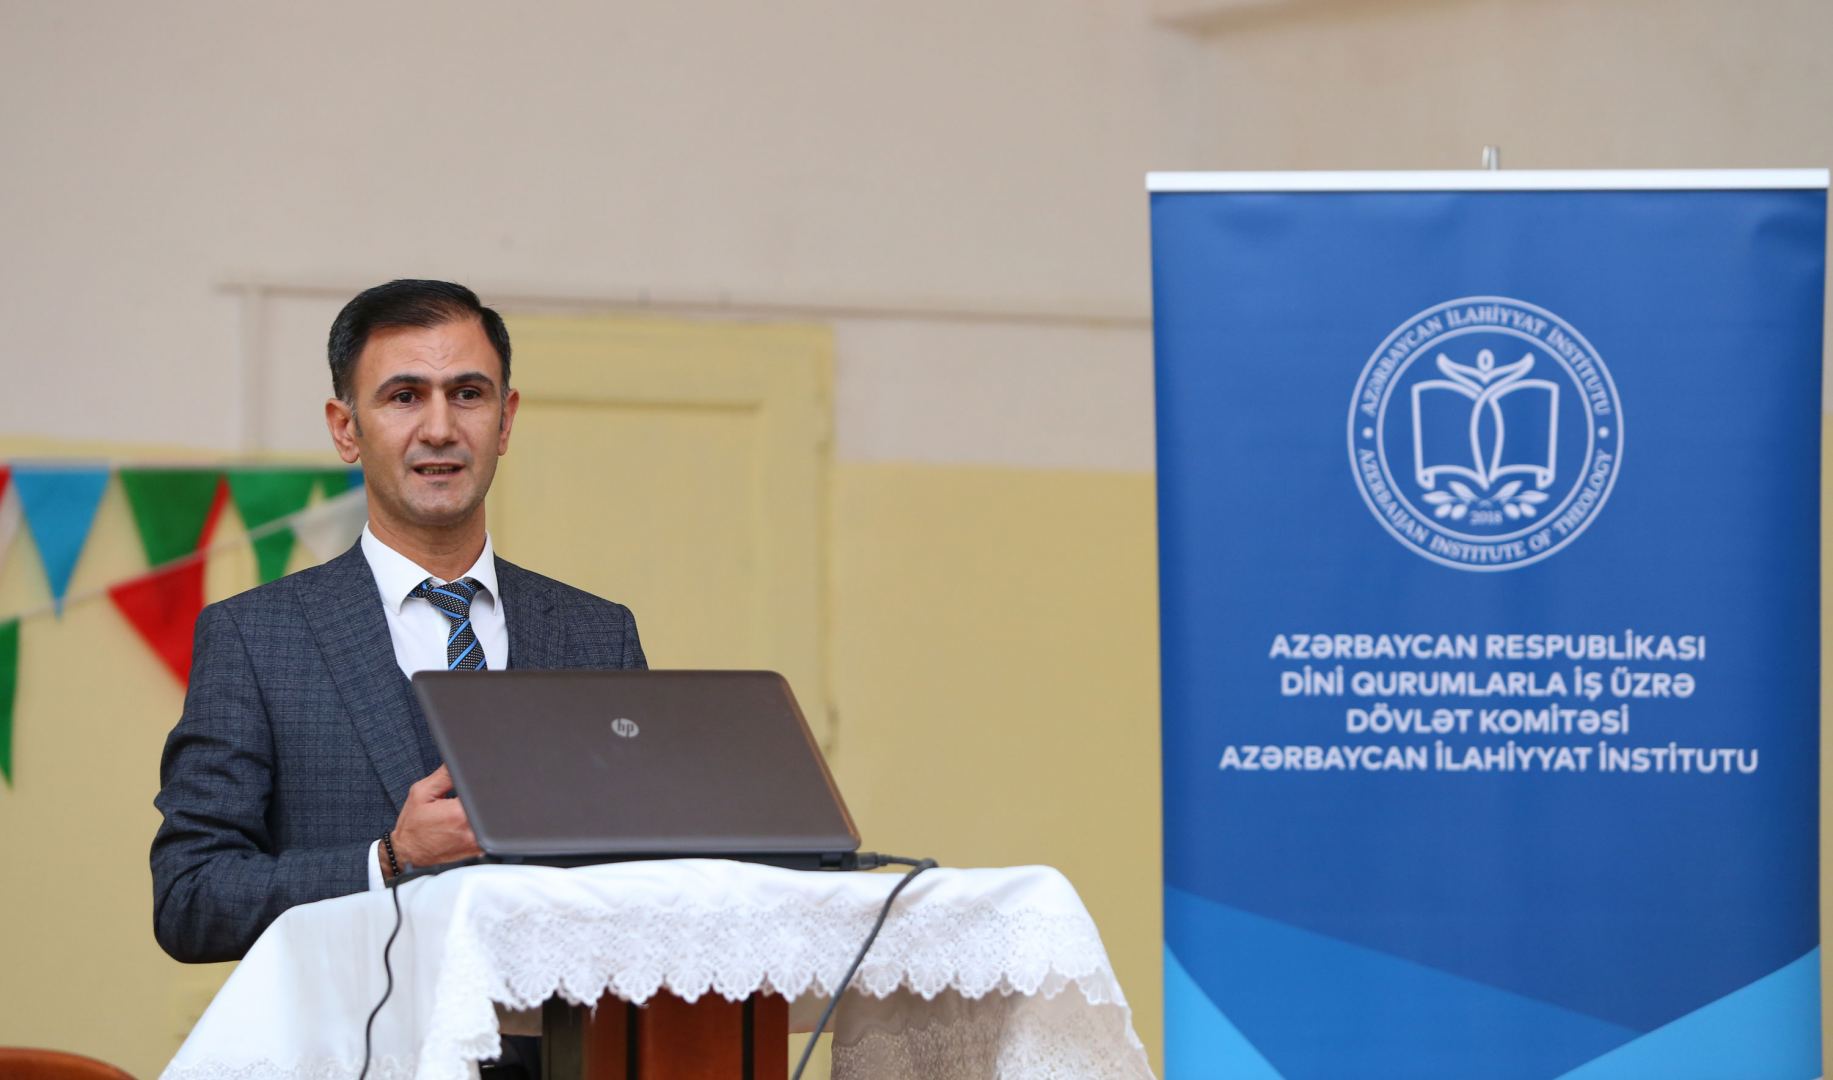 Azərbaycan İlahiyyat İnstitutu abituriyentlərlə görüşlərini davam etdirir (FOTO)